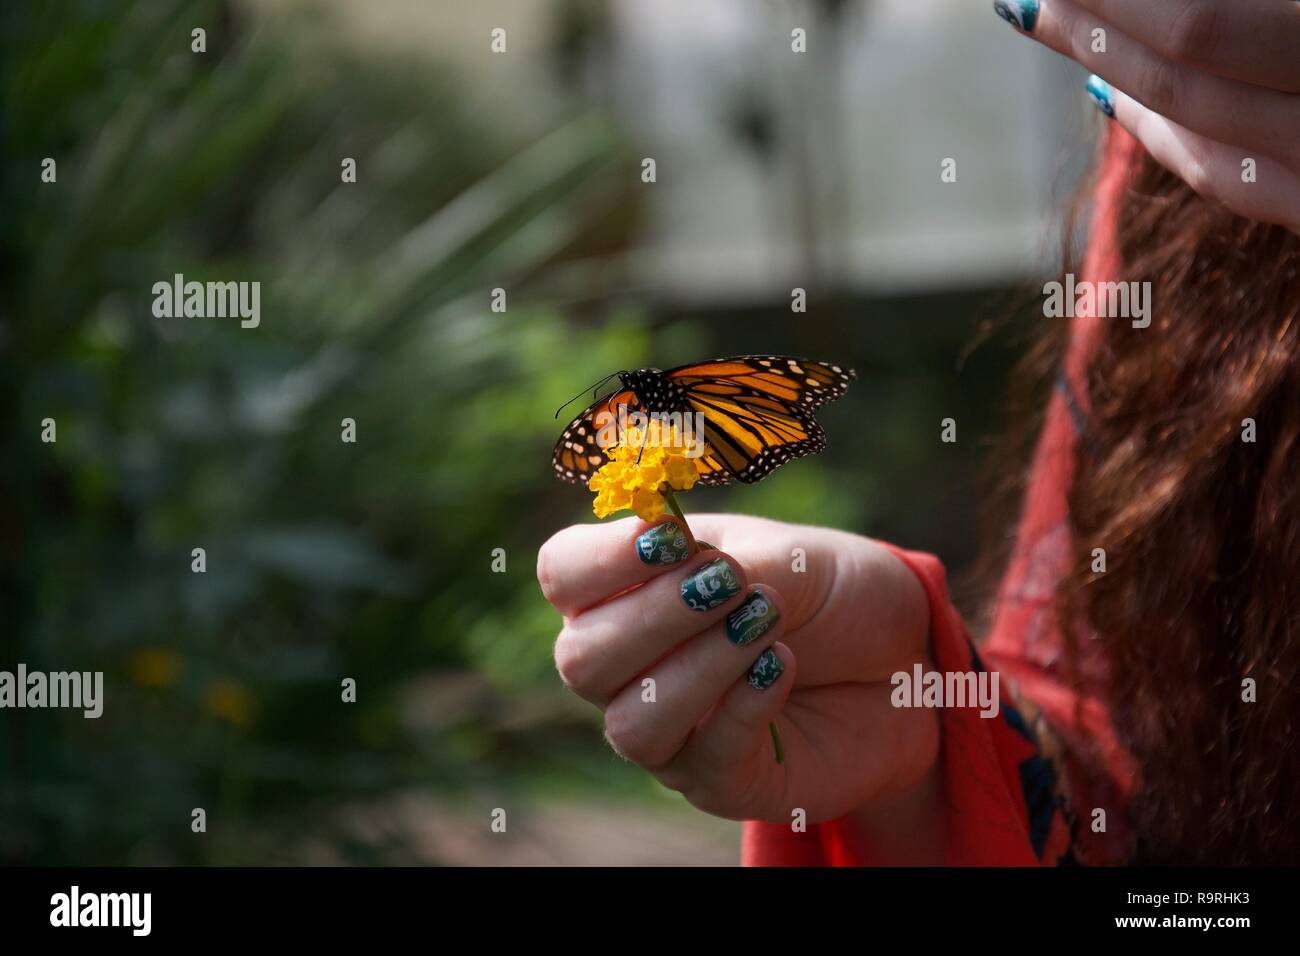 Una dama con uñas pintadas posee una pequeña flor amarilla con una naranja, amarillo, blanco y negro posado sobre mariposas con las alas abiertas Foto de stock